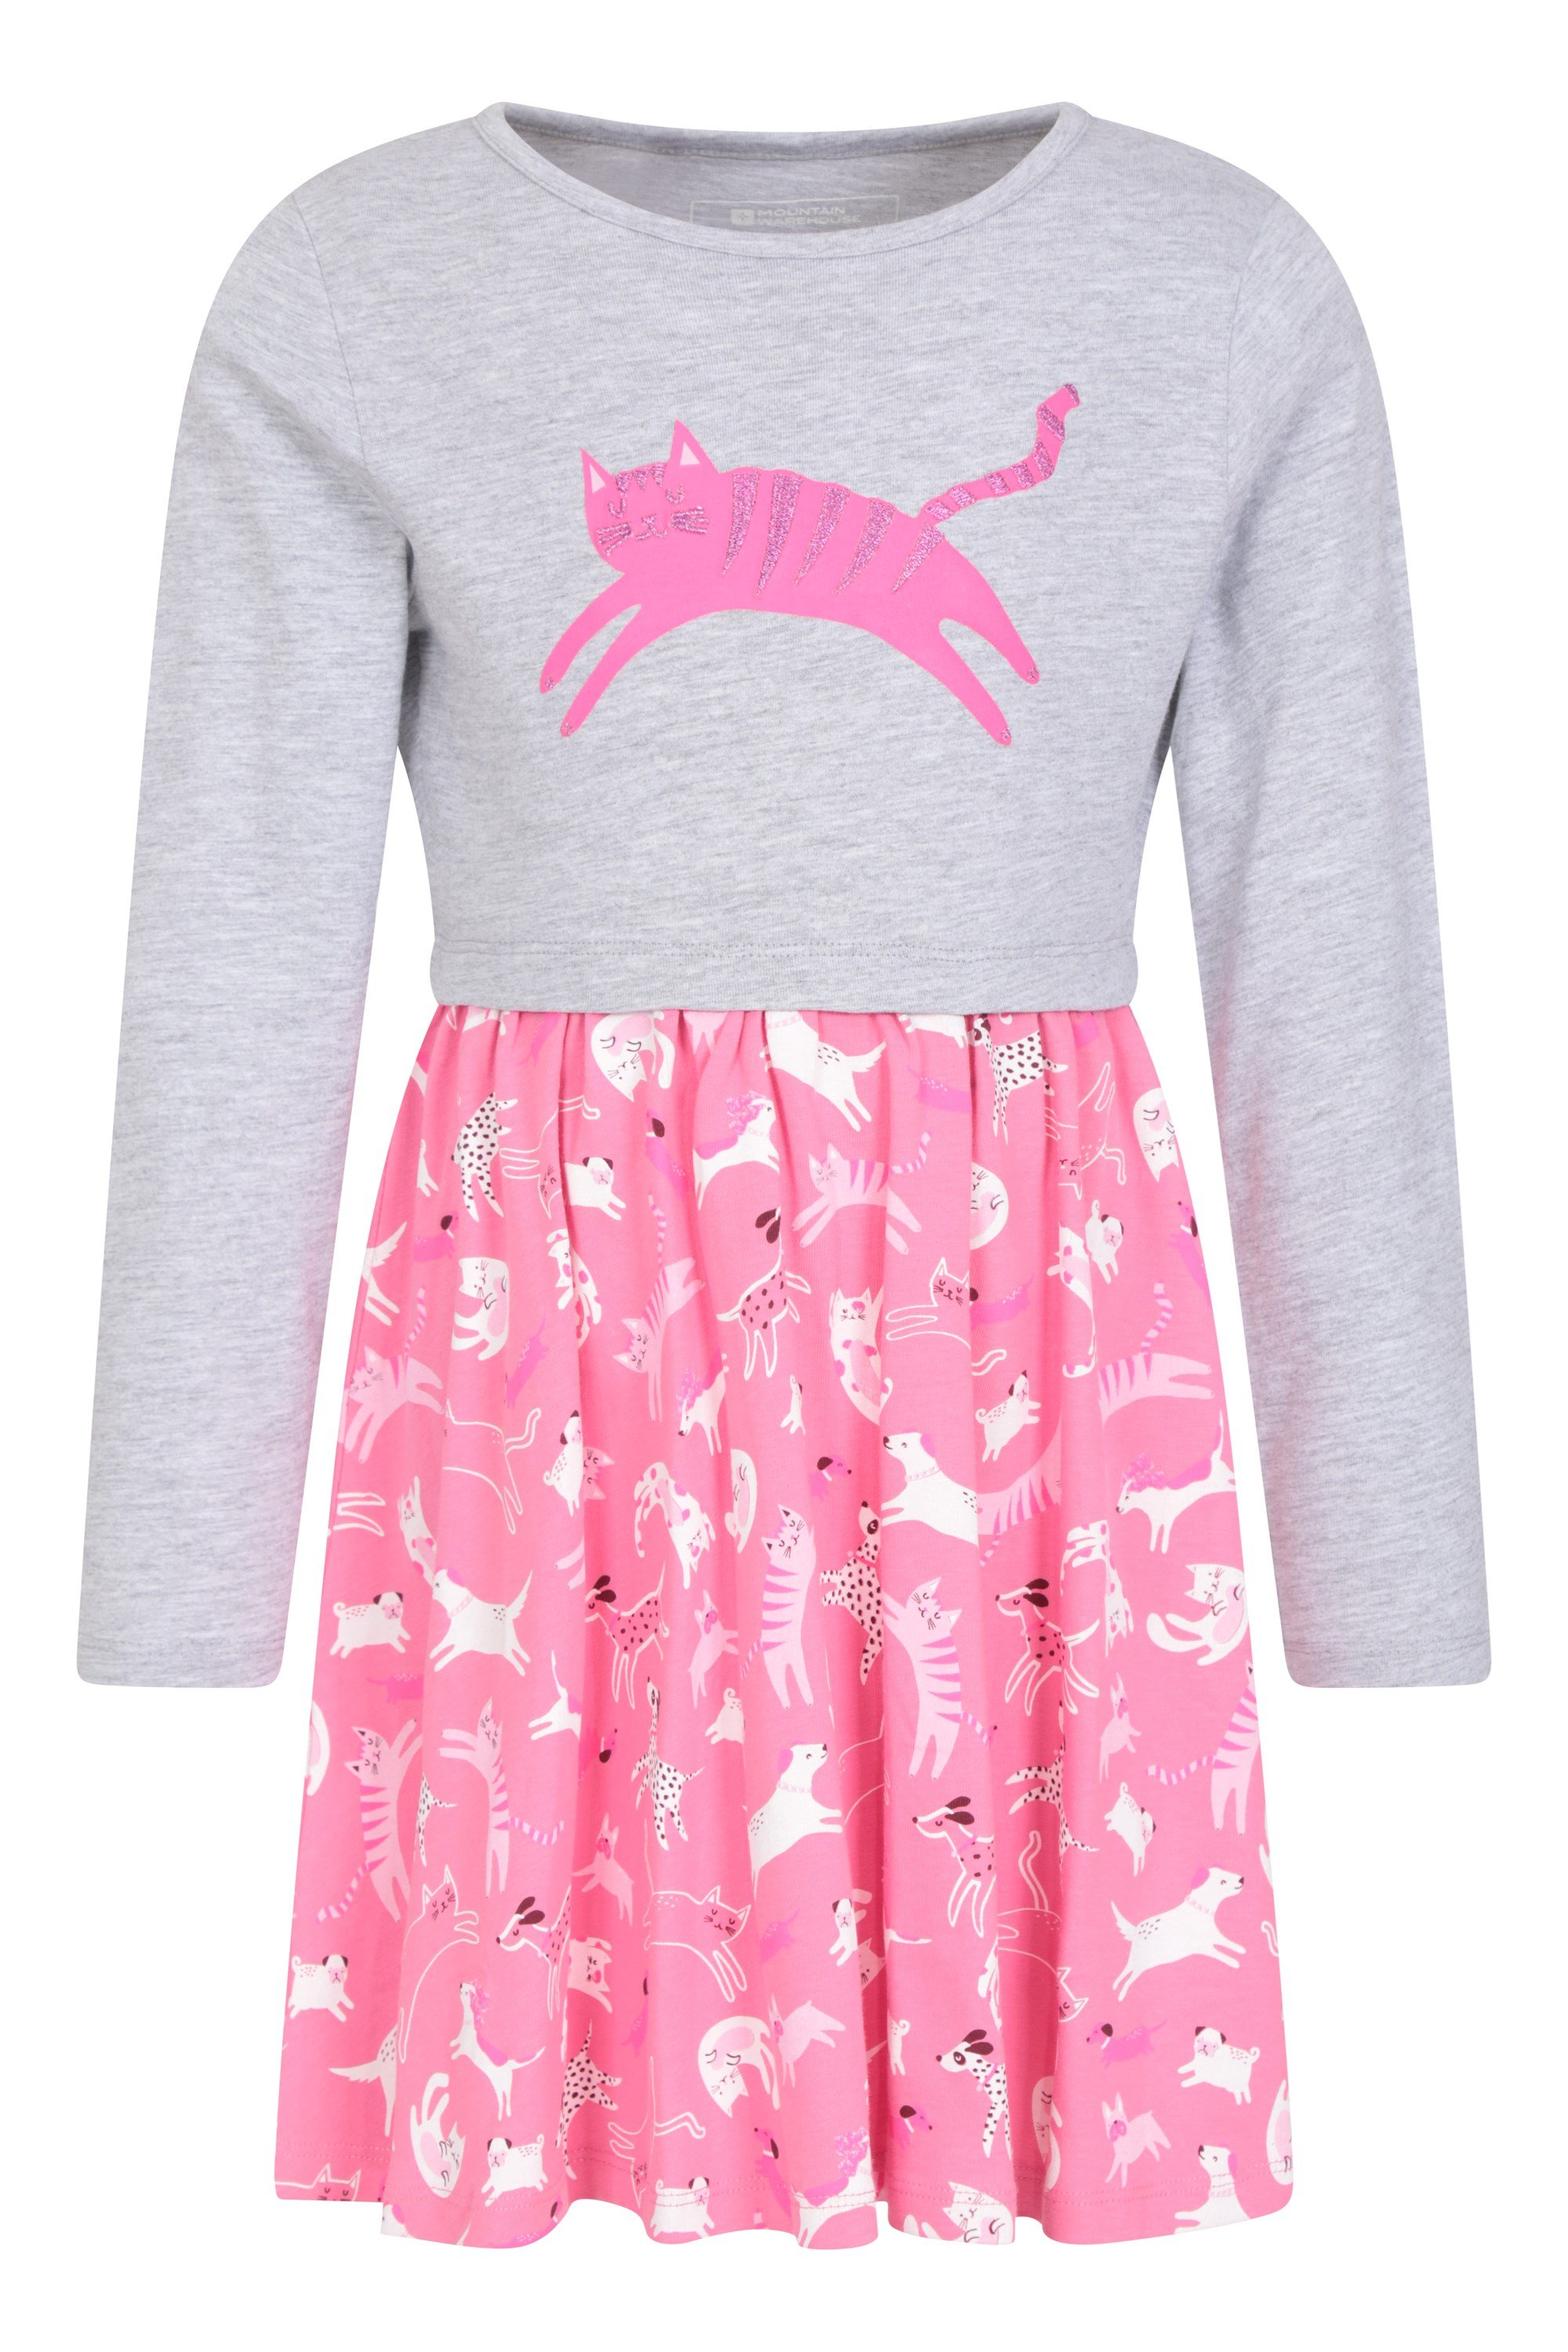 Poppy - dziecięca sukienka z bawełny organicznej - Pink